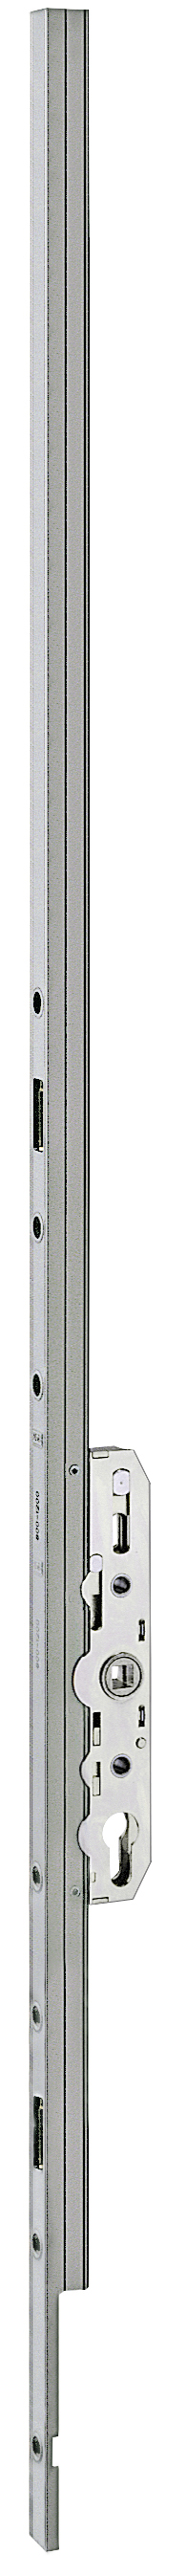 AGB -  Cremonese ALZANTE CLIMATECH per alzante scorrevole altezza maniglia fissa con chiusura a perni - gr / dim. 05 - entrata 37,5 - alt. man. 1000 - lbb/hbb 2401-2750